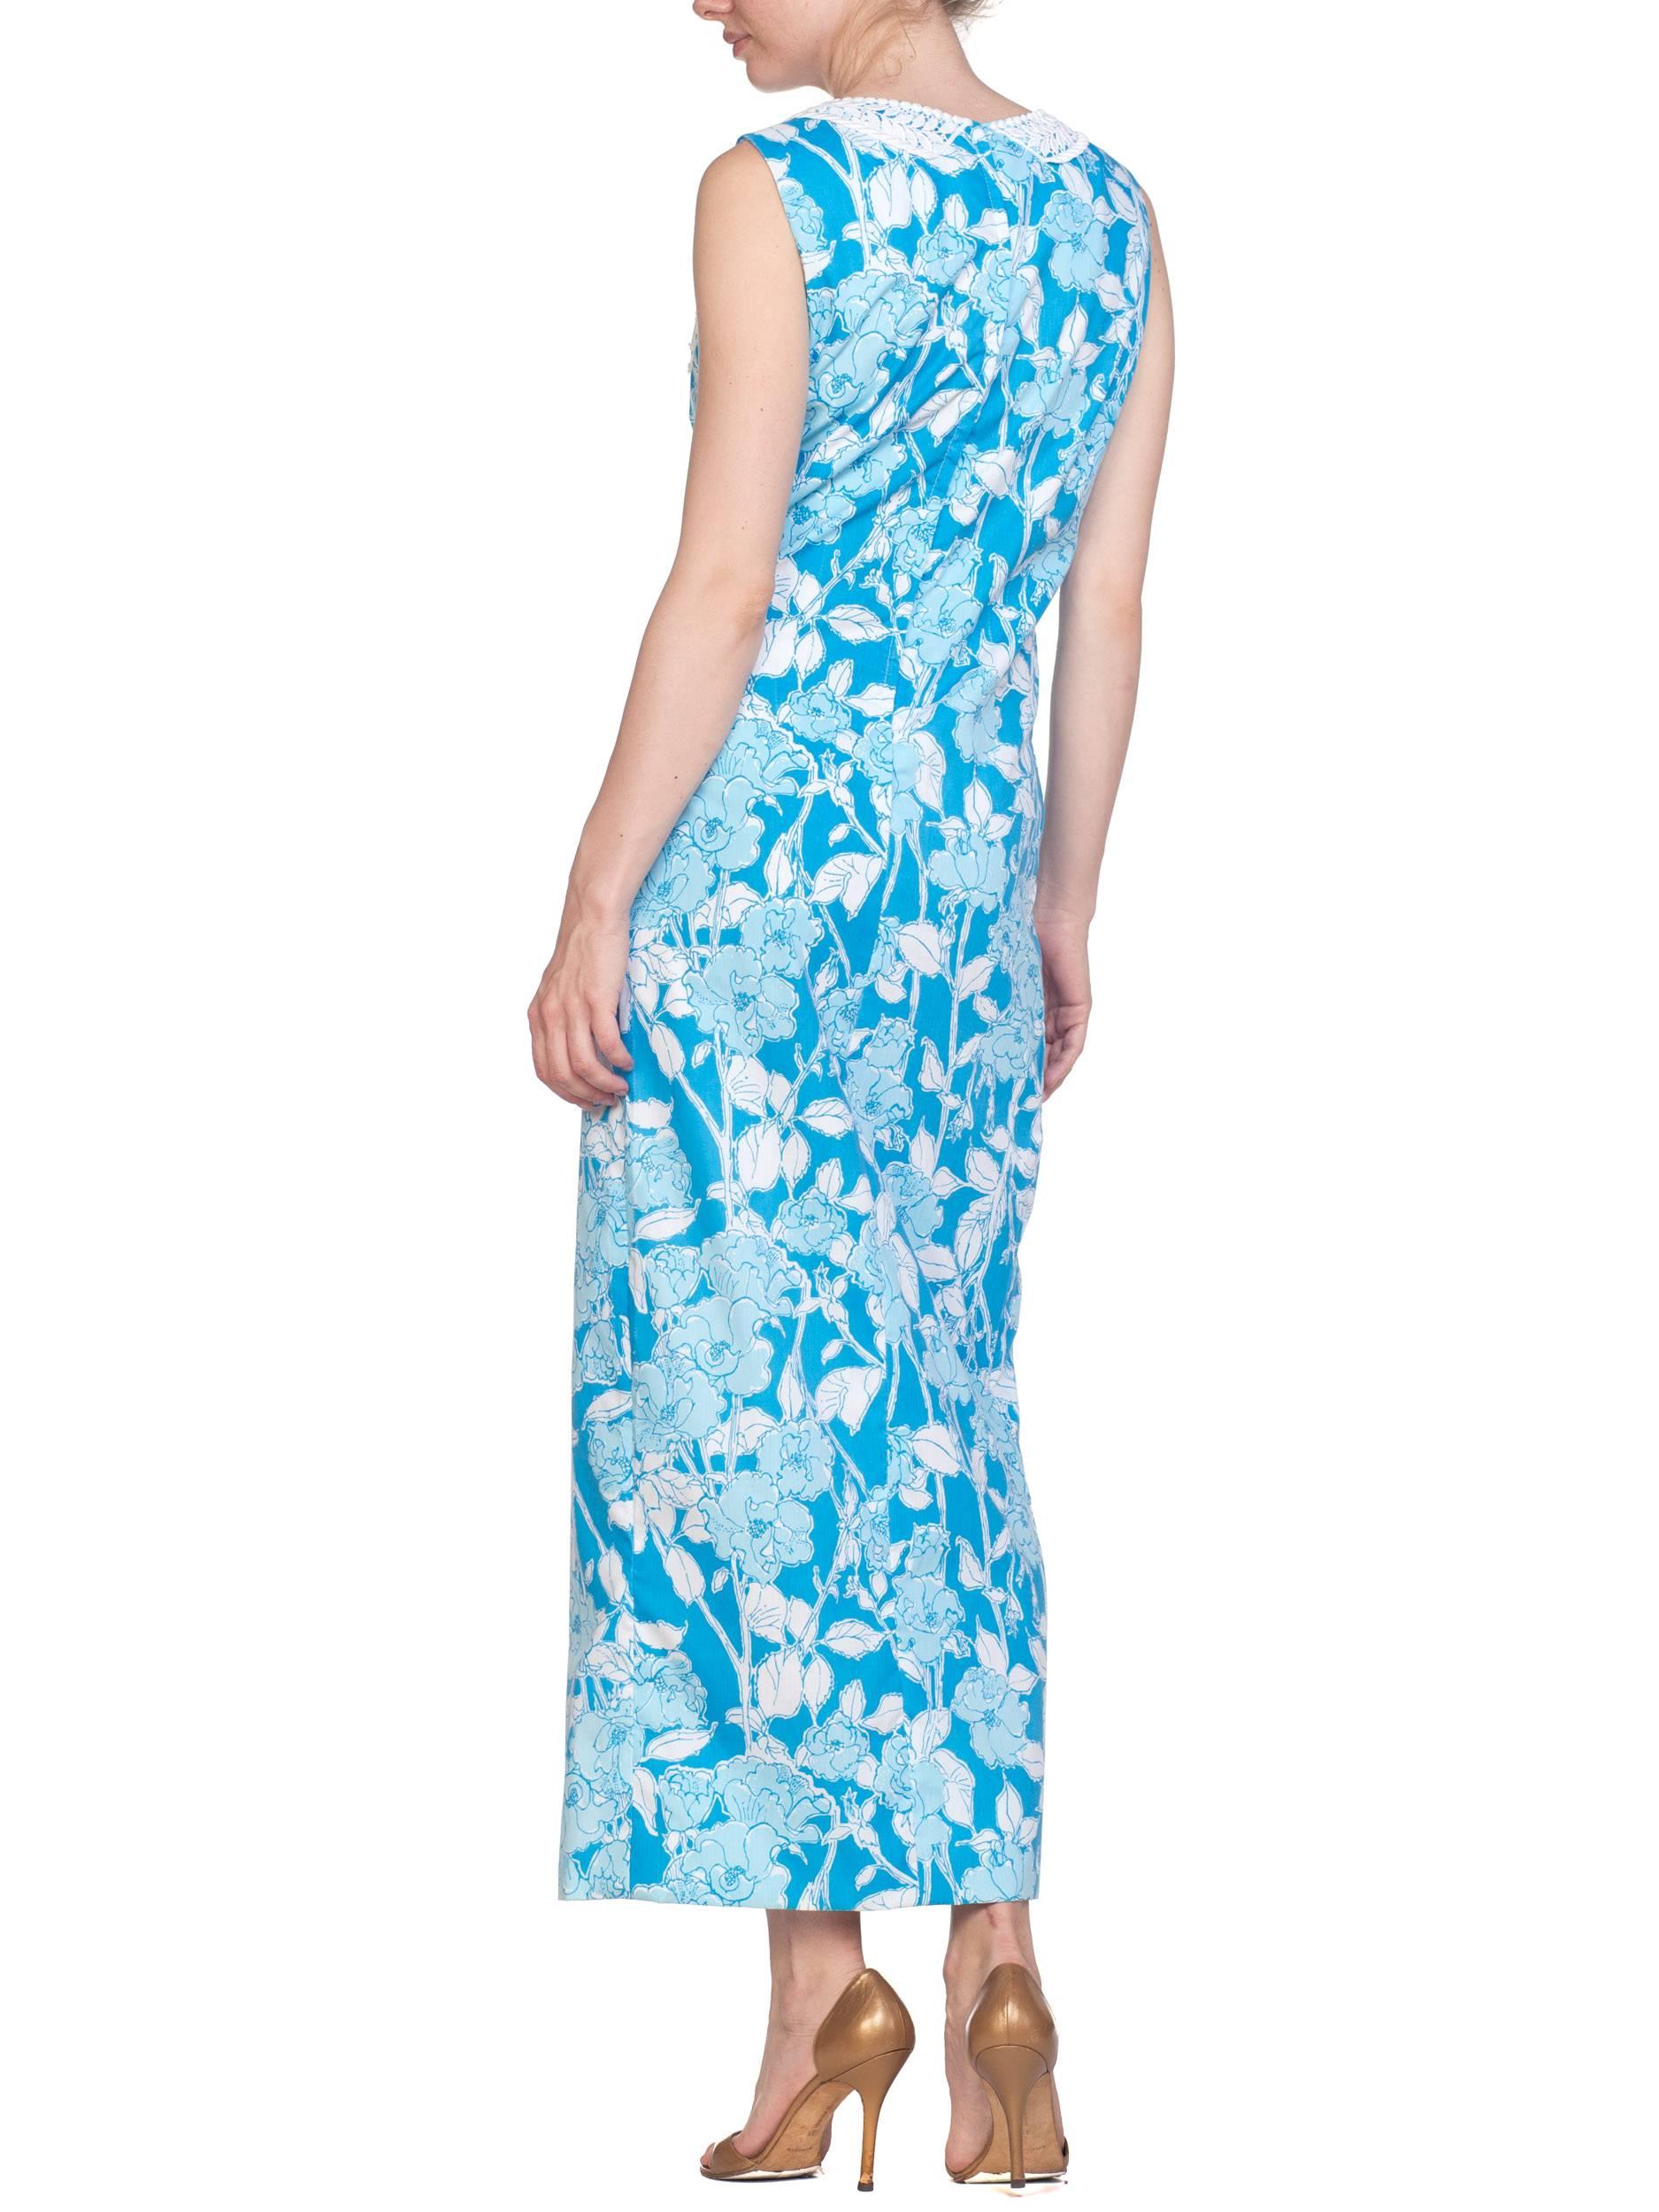 1960S LILY PULITZER Aqua  Floral Cotton Dress With White Lace Flowers Szl 5